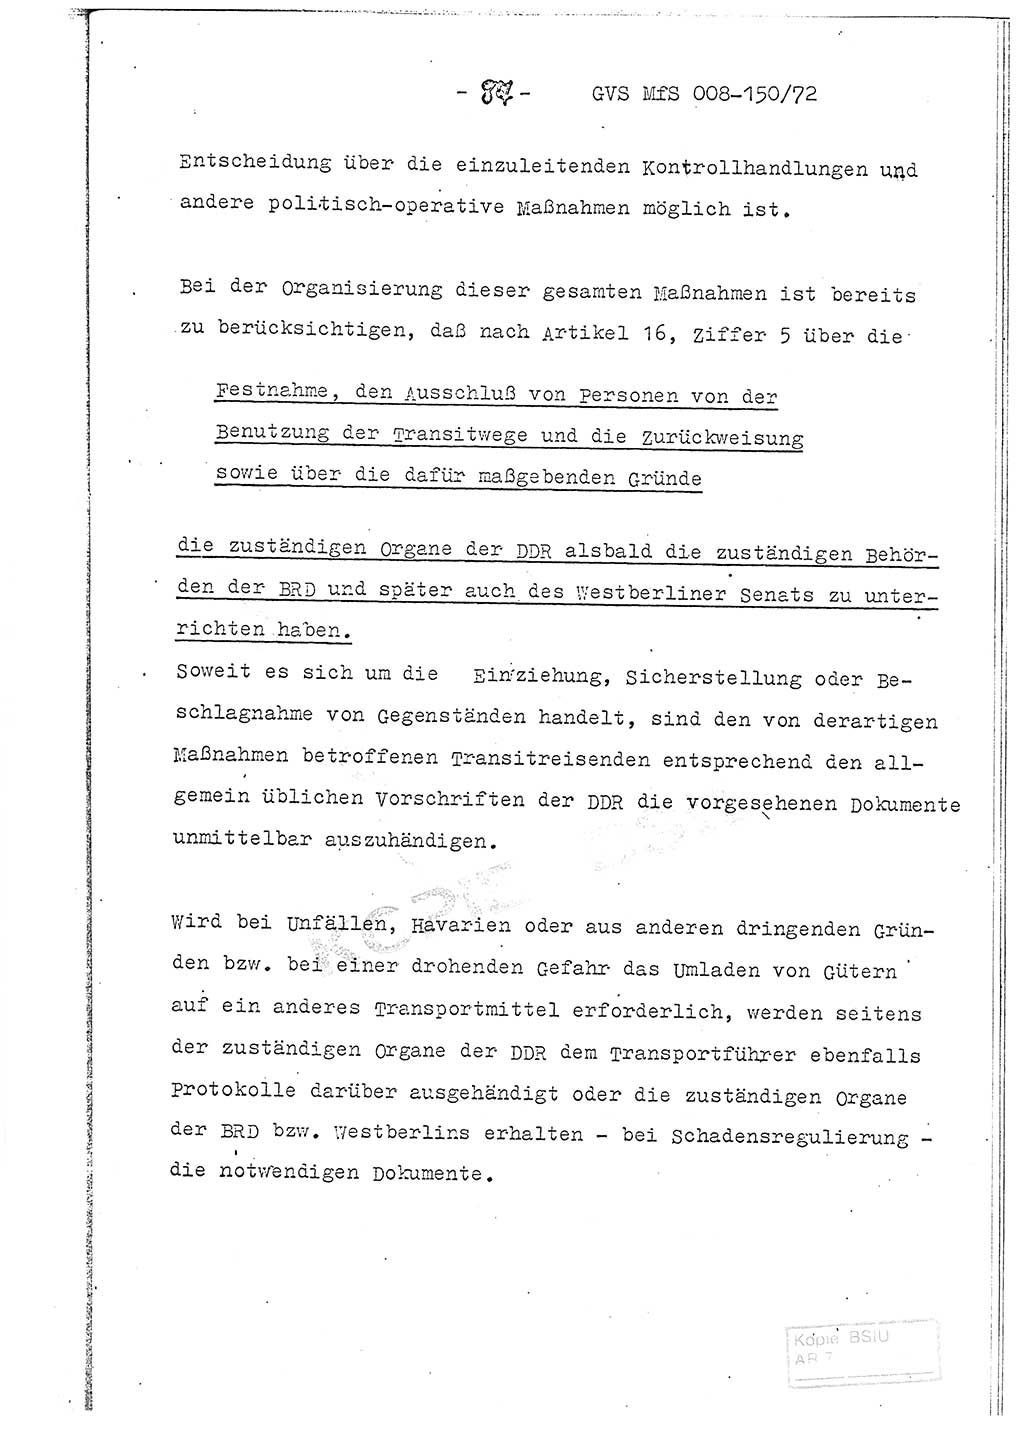 Referat (Entwurf) des Genossen Minister (Generaloberst Erich Mielke) auf der Dienstkonferenz 1972, Ministerium für Staatssicherheit (MfS) [Deutsche Demokratische Republik (DDR)], Der Minister, Geheime Verschlußsache (GVS) 008-150/72, Berlin 25.2.1972, Seite 87 (Ref. Entw. DK MfS DDR Min. GVS 008-150/72 1972, S. 87)